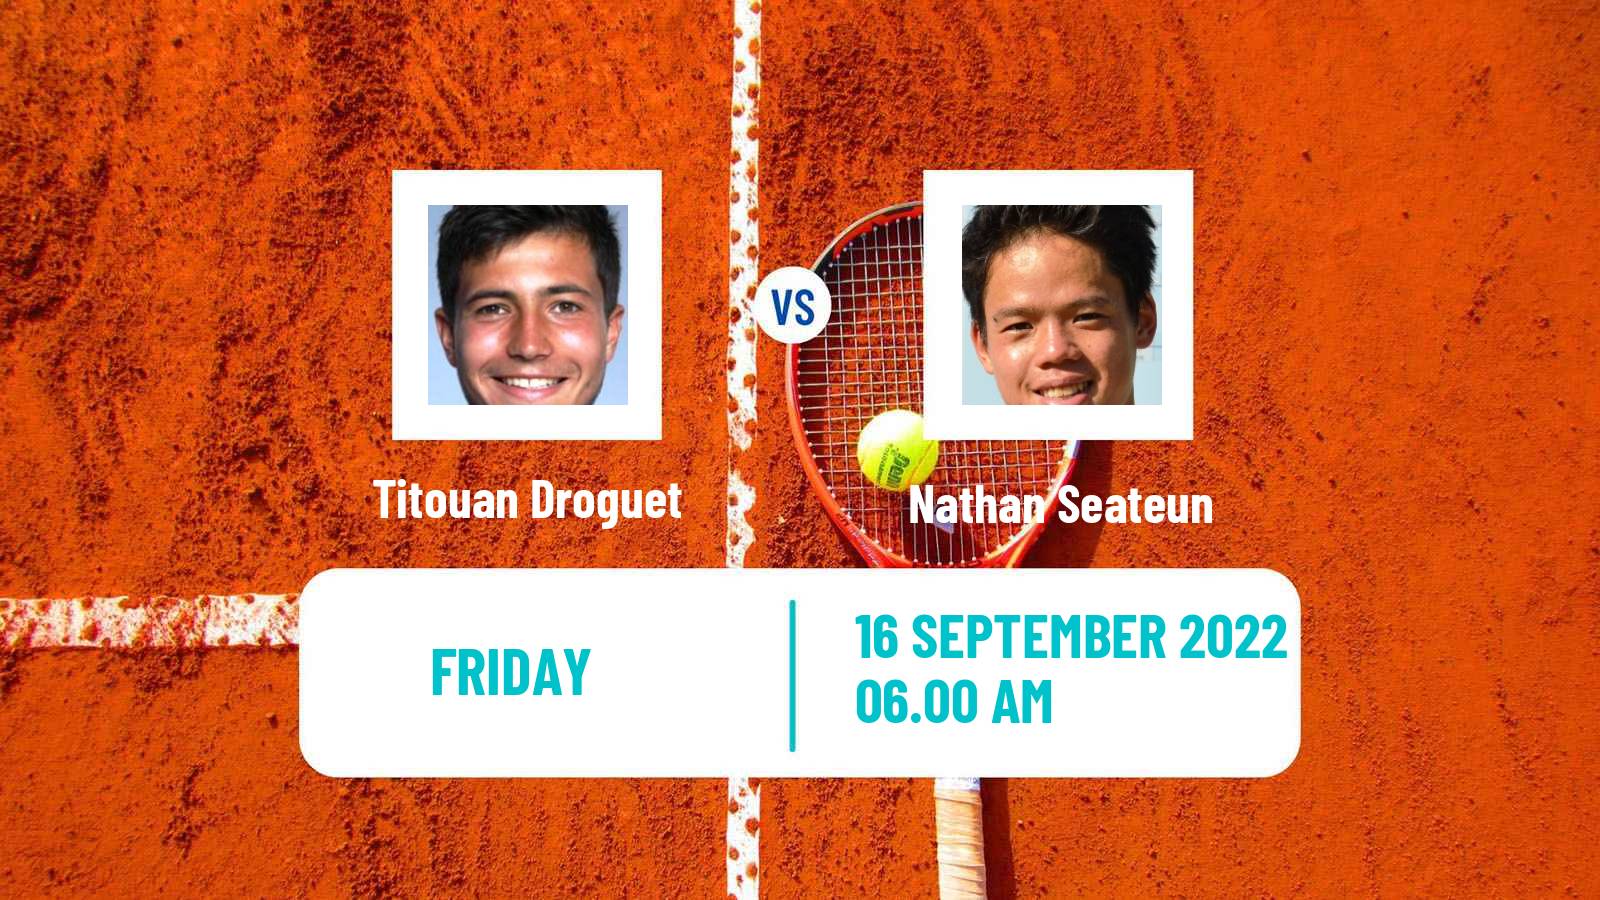 Tennis ITF Tournaments Titouan Droguet - Nathan Seateun